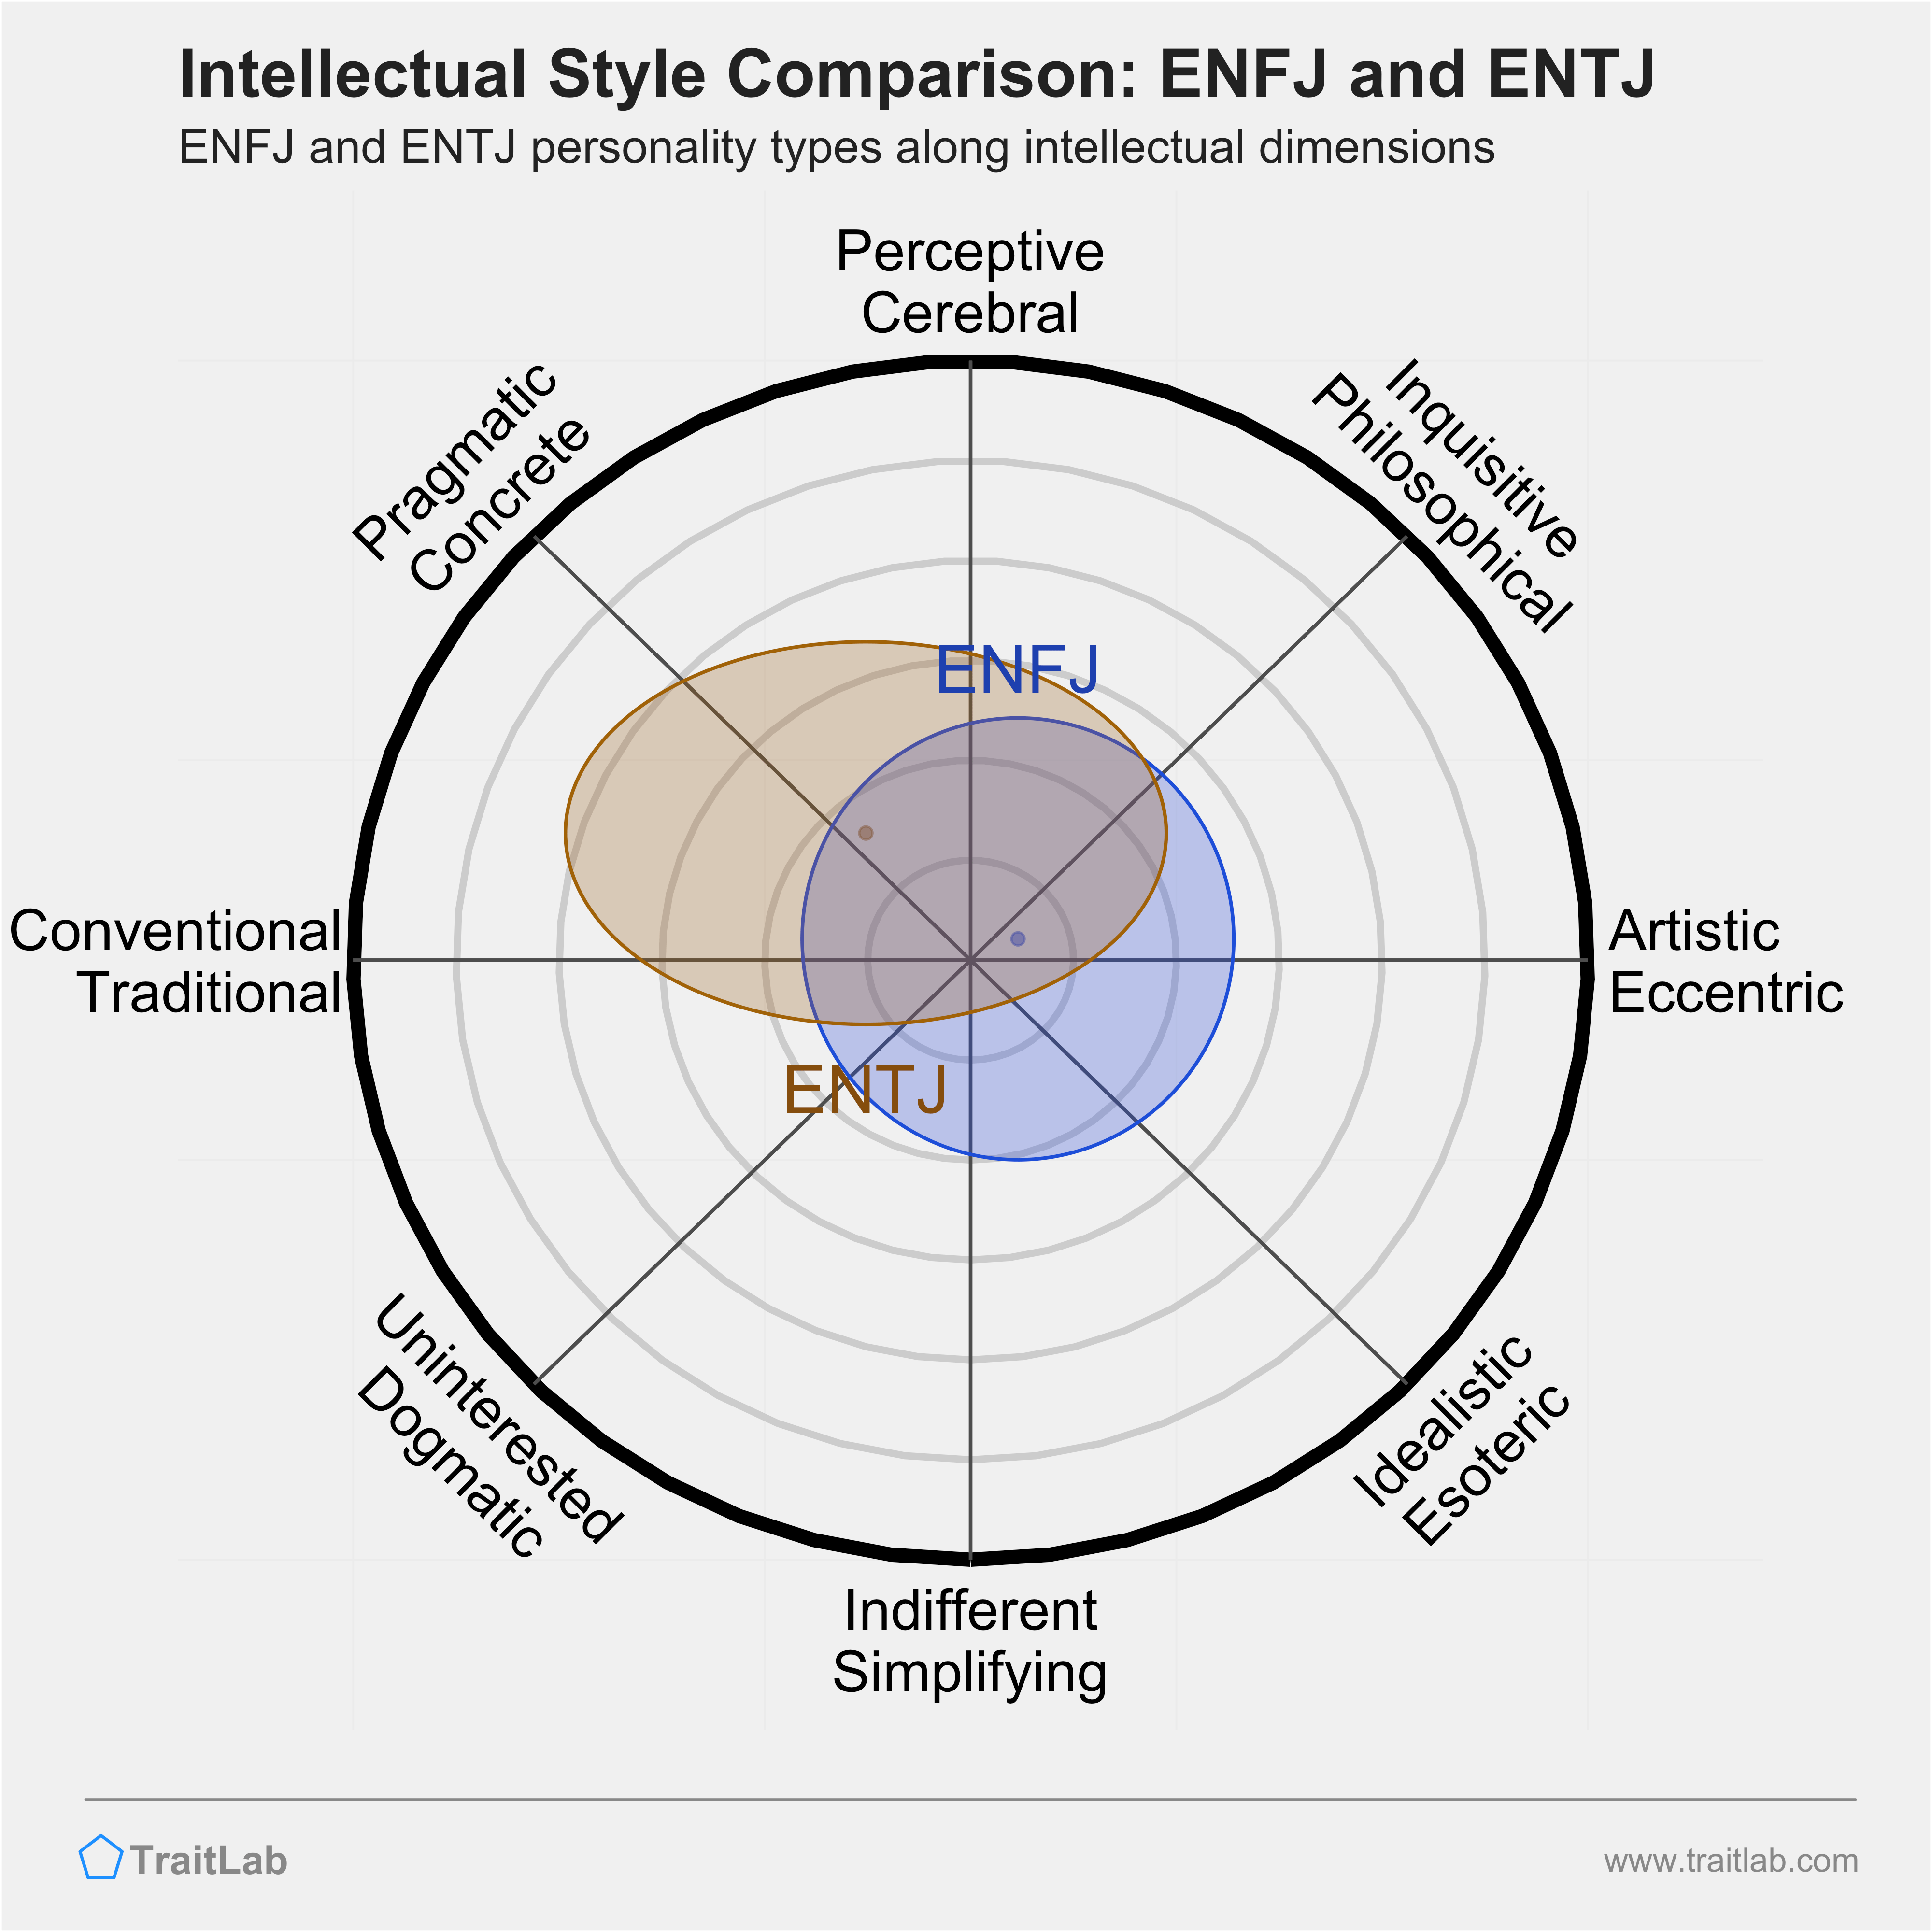 ENFJ and ENTJ comparison across intellectual dimensions